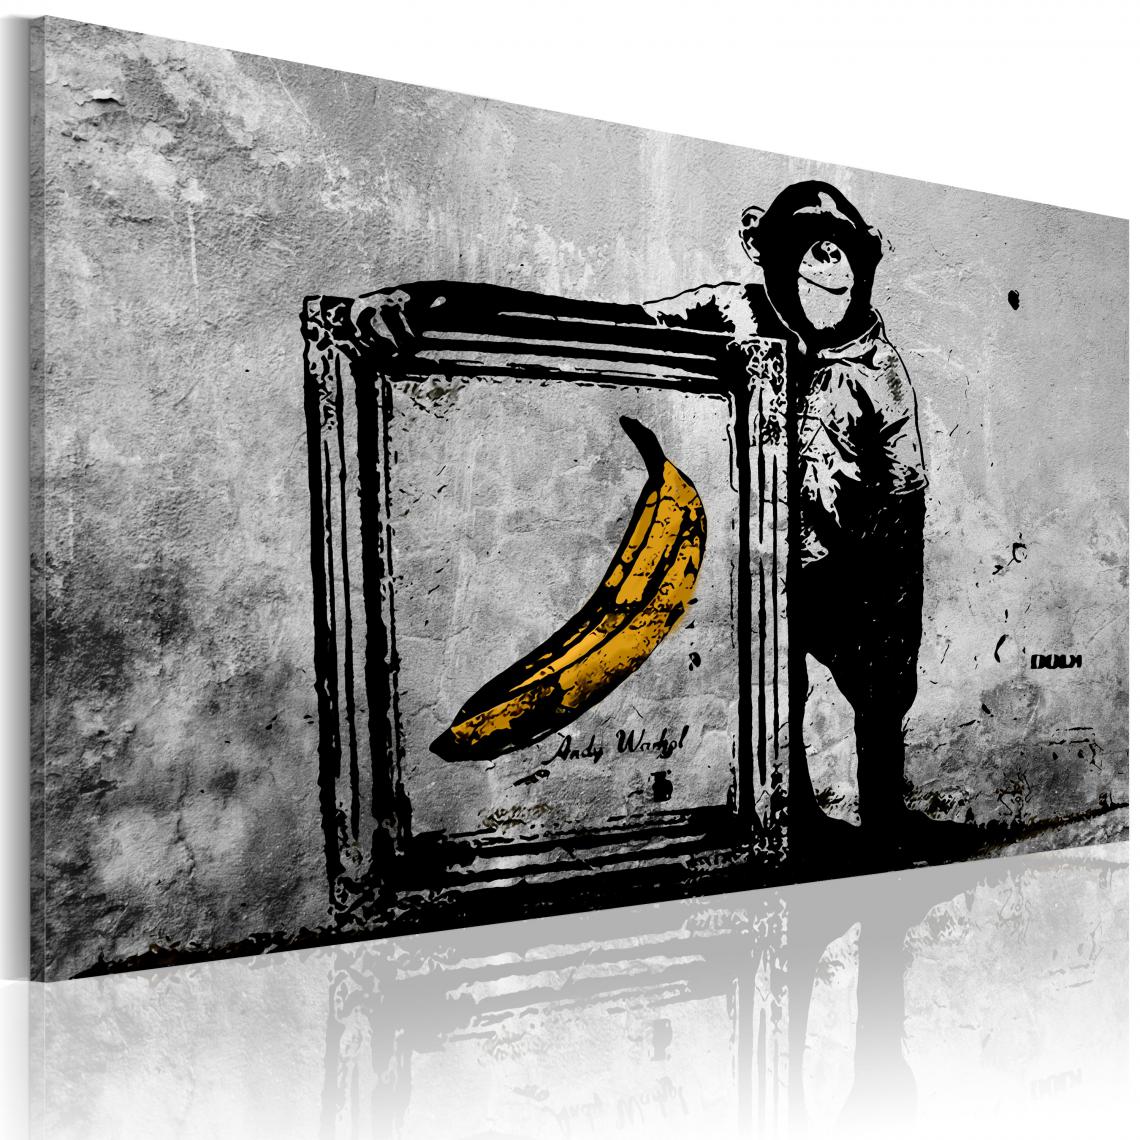 Decoshop26 - Tableau sur toile décoration murale image imprimée cadre en bois à suspendre Inspiré de Banksy - noir et blanc 120x80 cm 11_0003340 - Tableaux, peintures